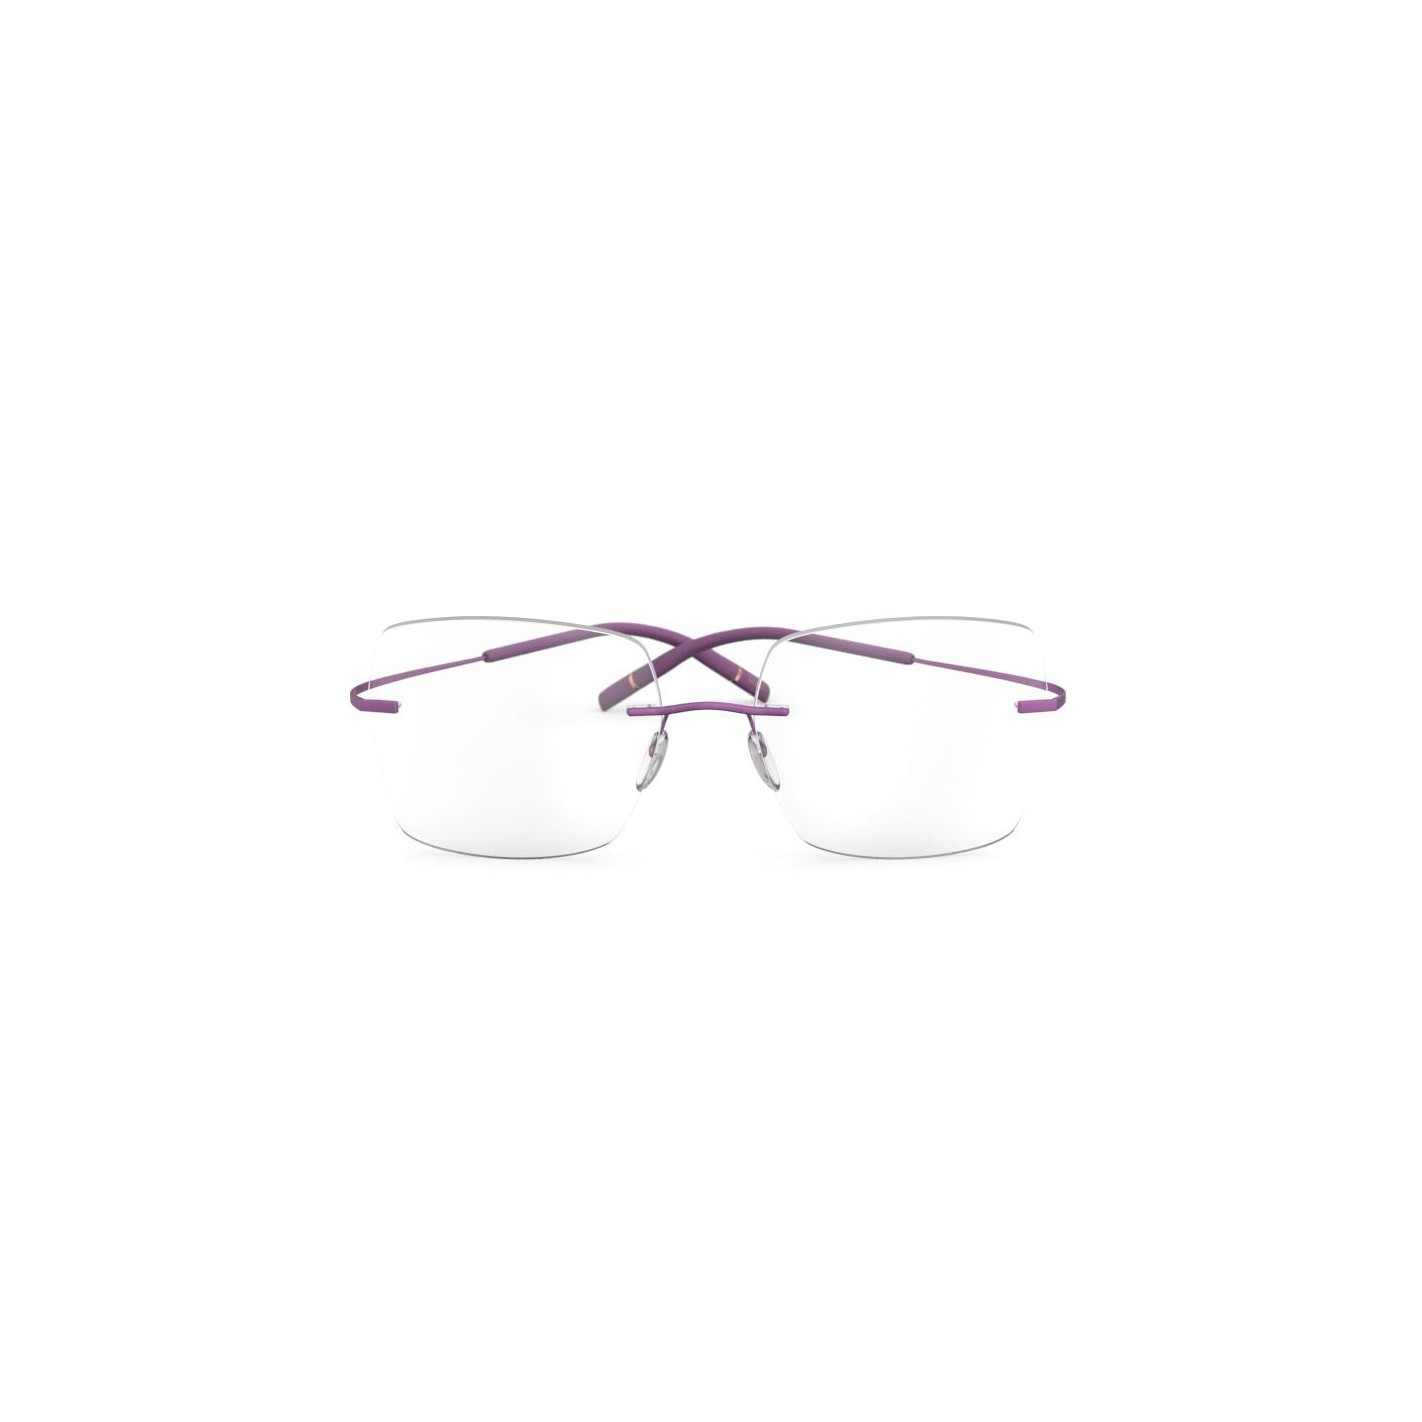 Las nuevas gafas Titan Minimal Art revolucionado el sector debido a su diseño minimalista y extraordinaria comodidad de uso.